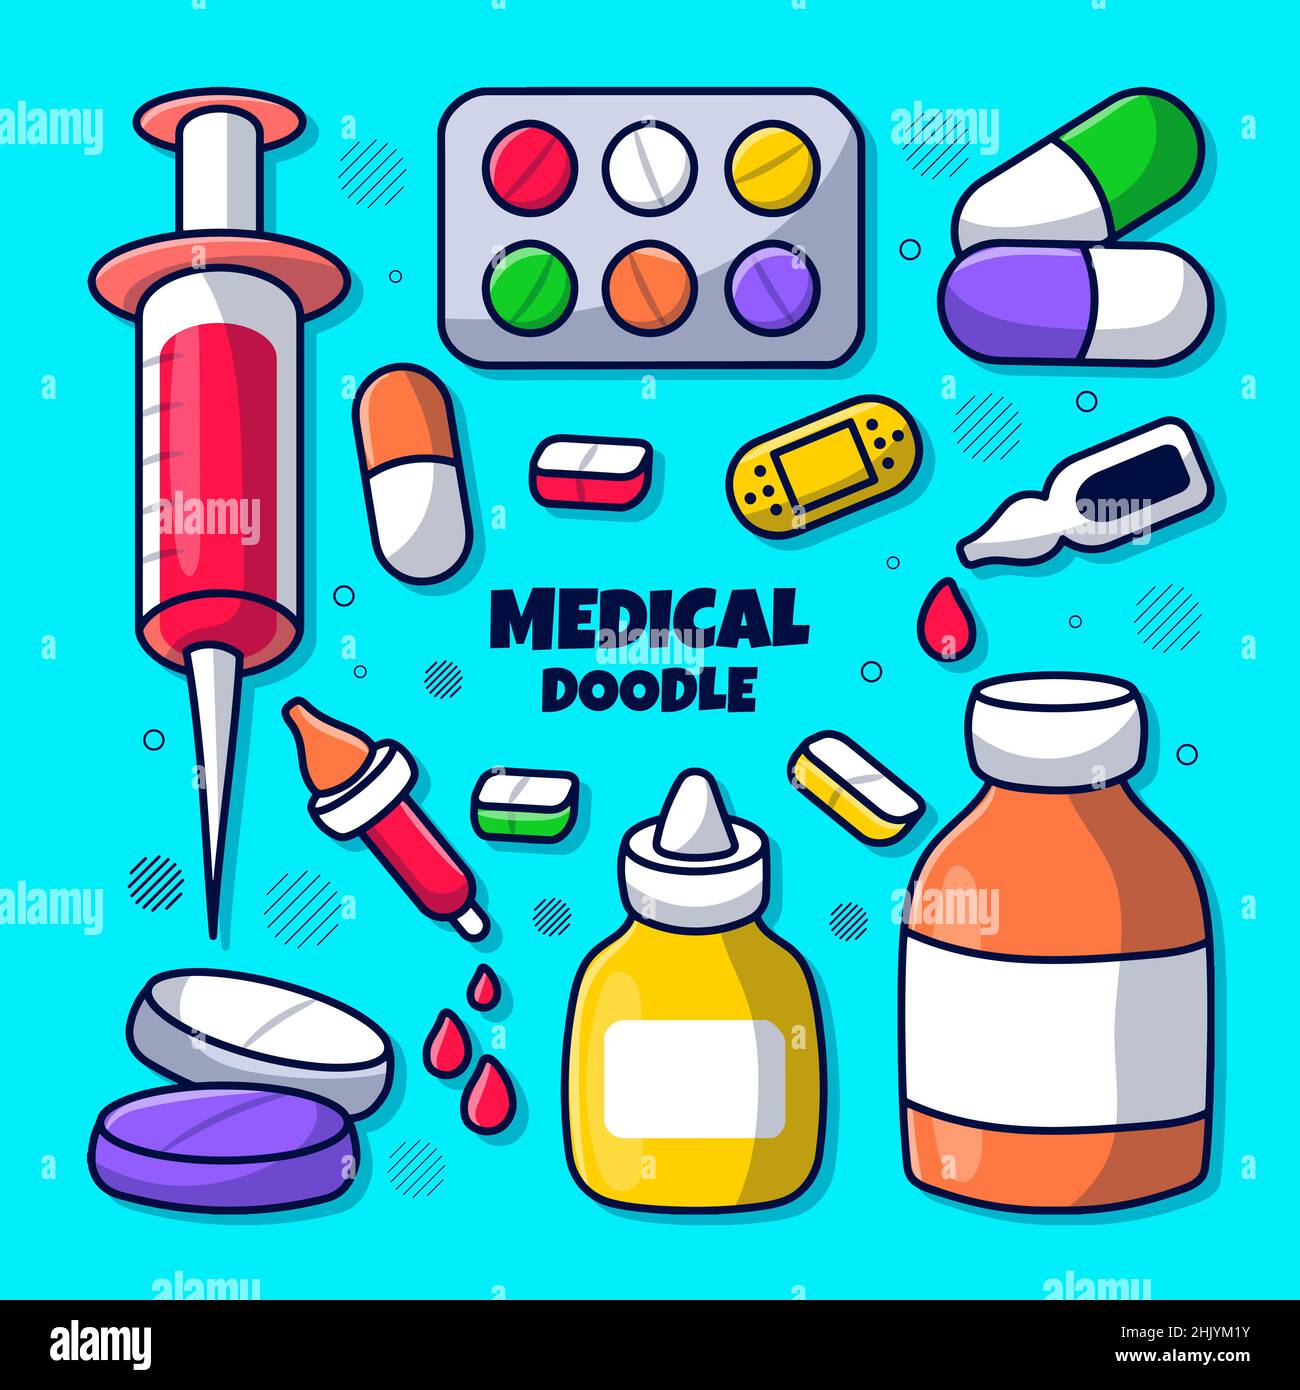 Medizinisches Element-Set mit farbiger handgezeichneter Doodle-Illustration Stock Vektor